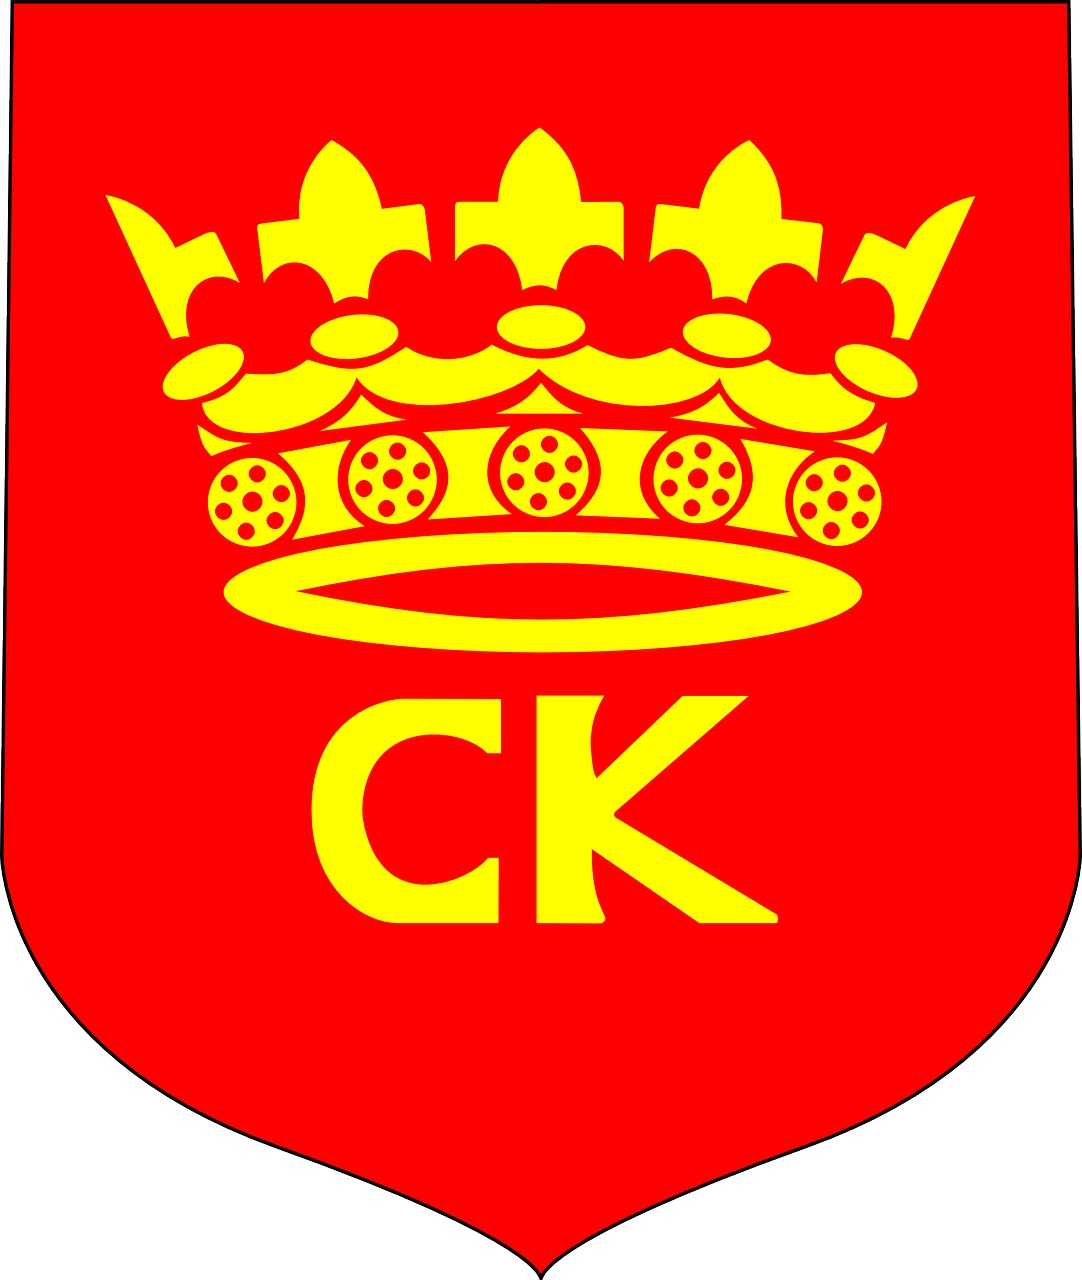 Crest, Emblema, Herbas, Lenkija, Karūna, Ženklelis, Piktograma, Heraldinis, Skydas, Insignia